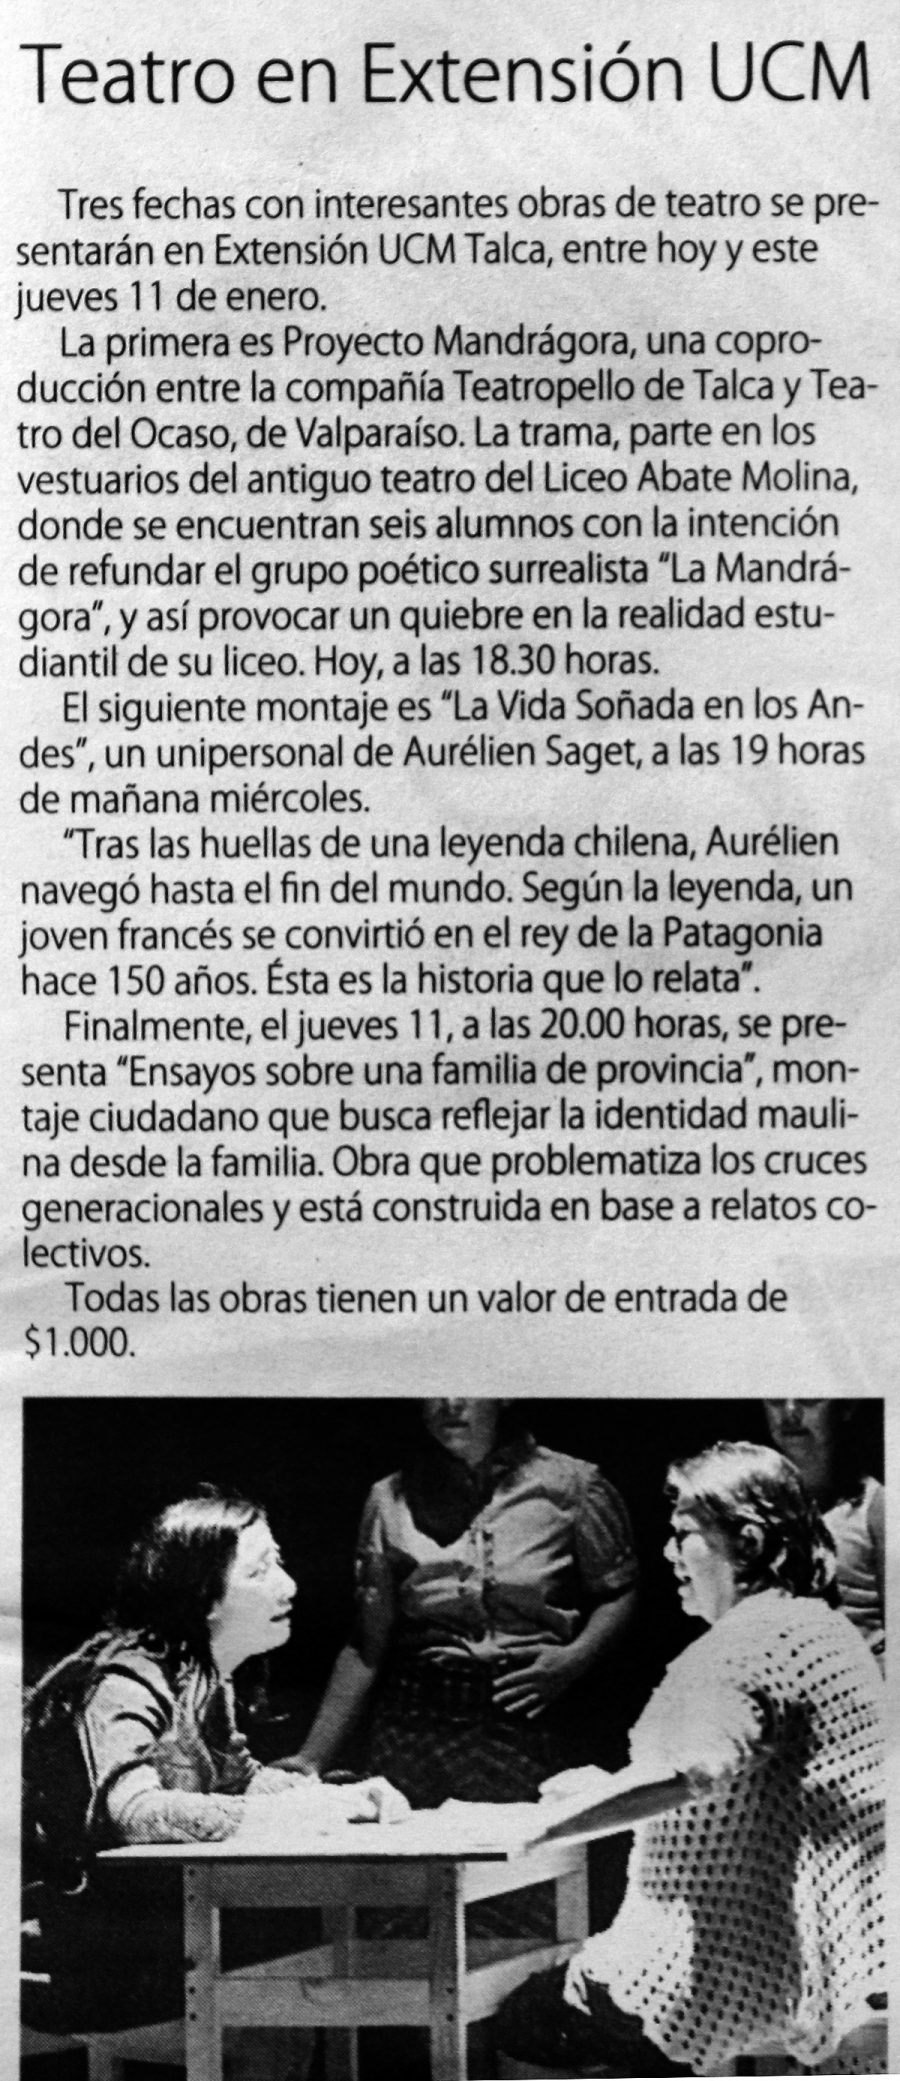 09 de enero en Diario El Centro: “Teatro en Extensión UCM”